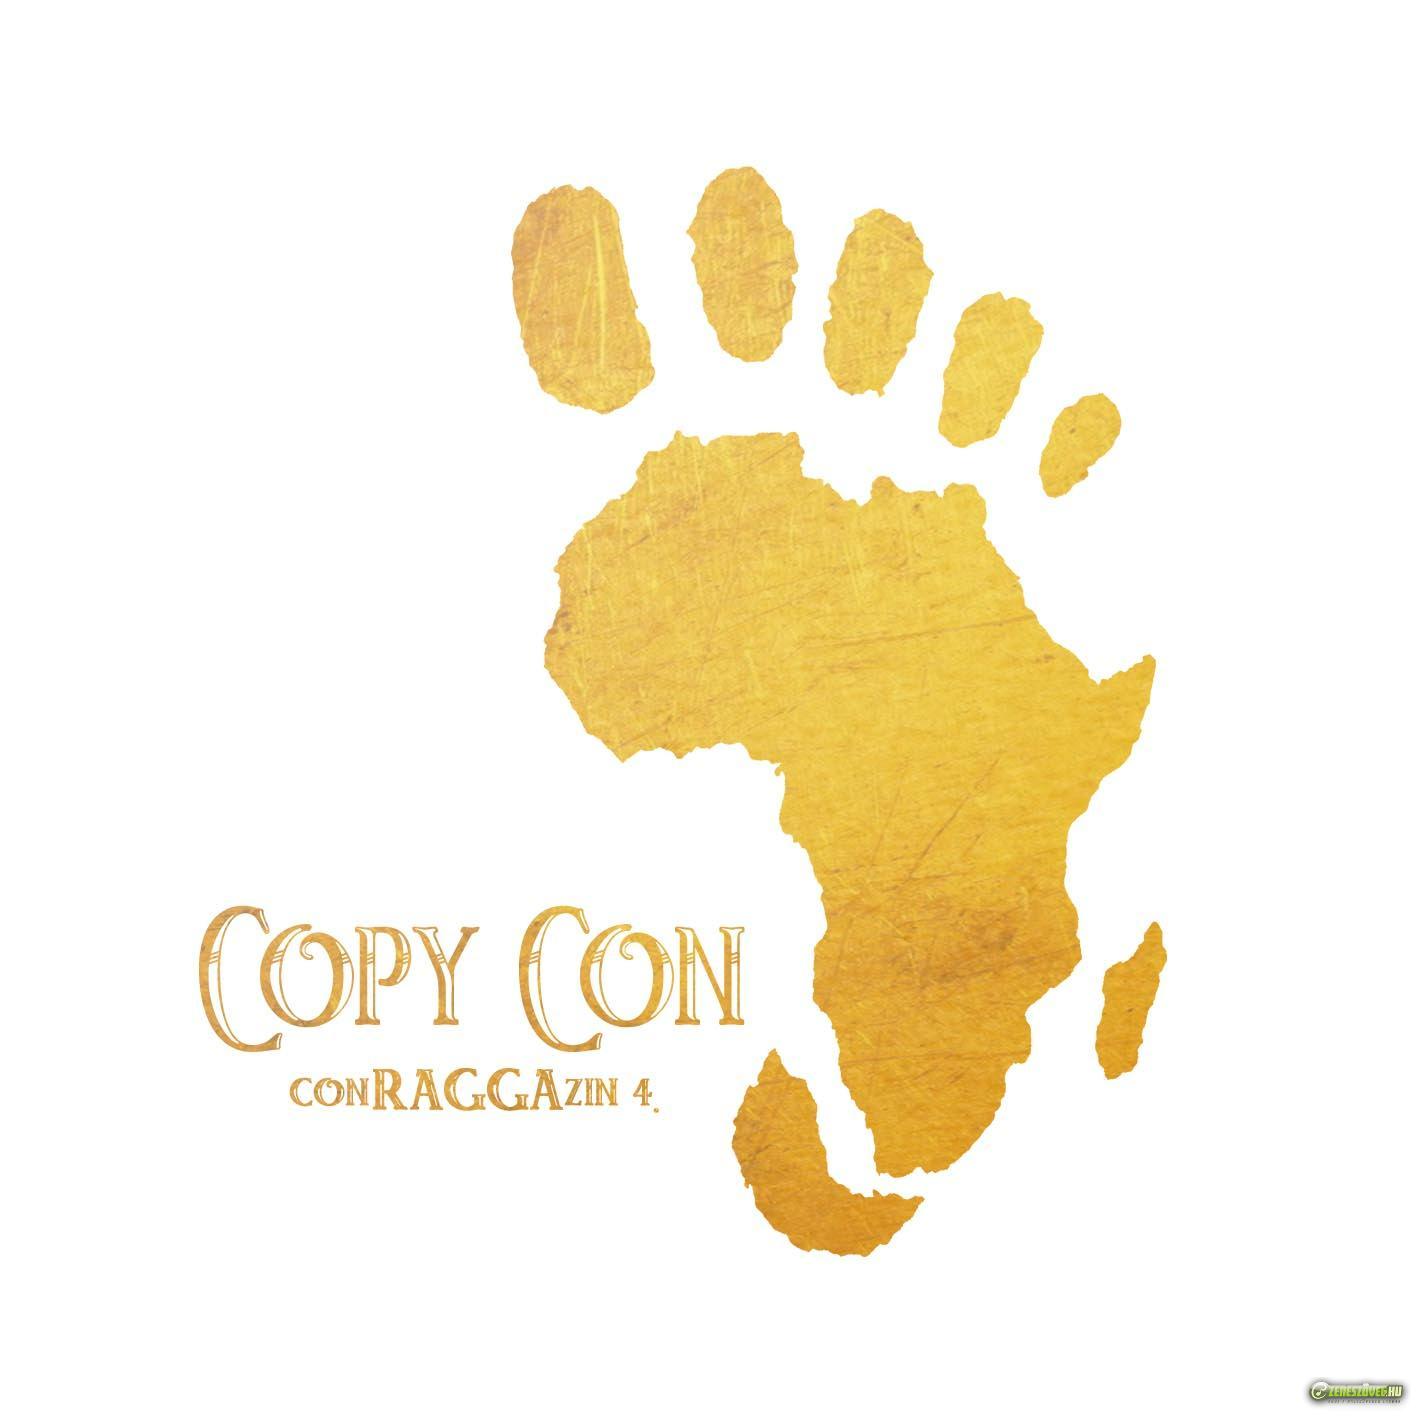 Copy Con ConRAGGAzzin 4.